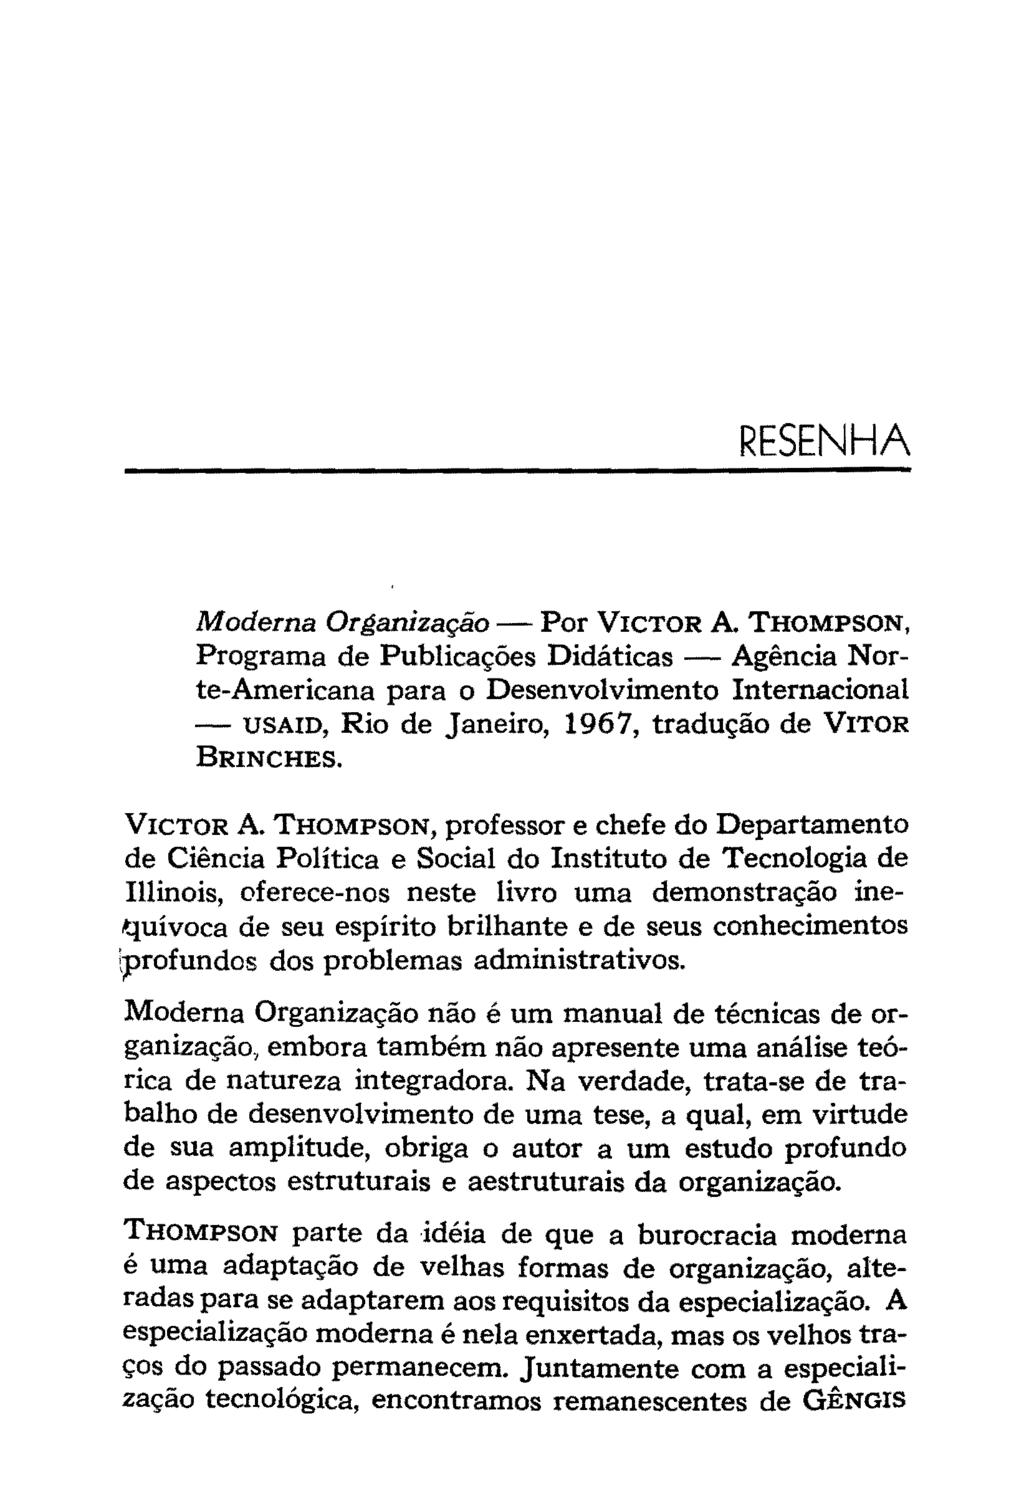 RESENHA Moderna Organização- Por VICTOR A THOMPSON, Programa de Publicações Didáticas - Agência Norte-Americana para o Desenvolvimento Internacional - USAID, Rio de Janeiro, 1967, tradução de VITOR